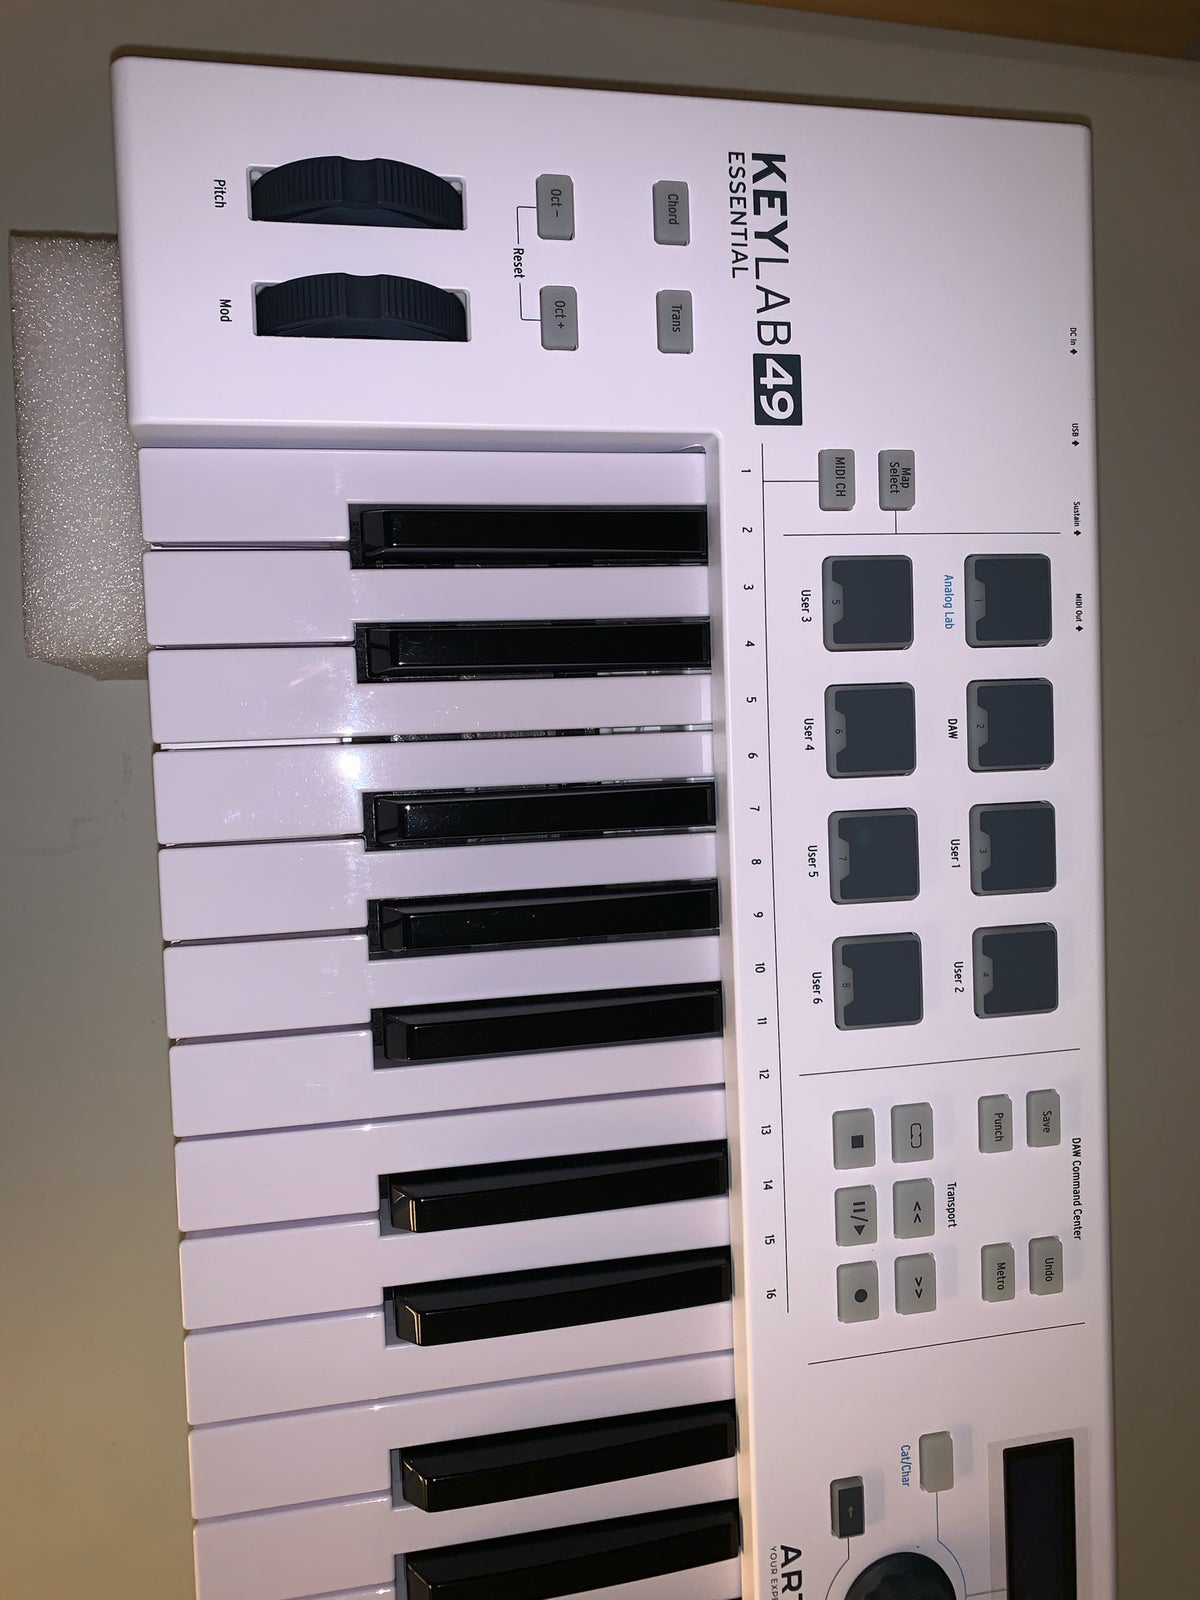 Midi keyboard, Arturia KeyLab Essential 49